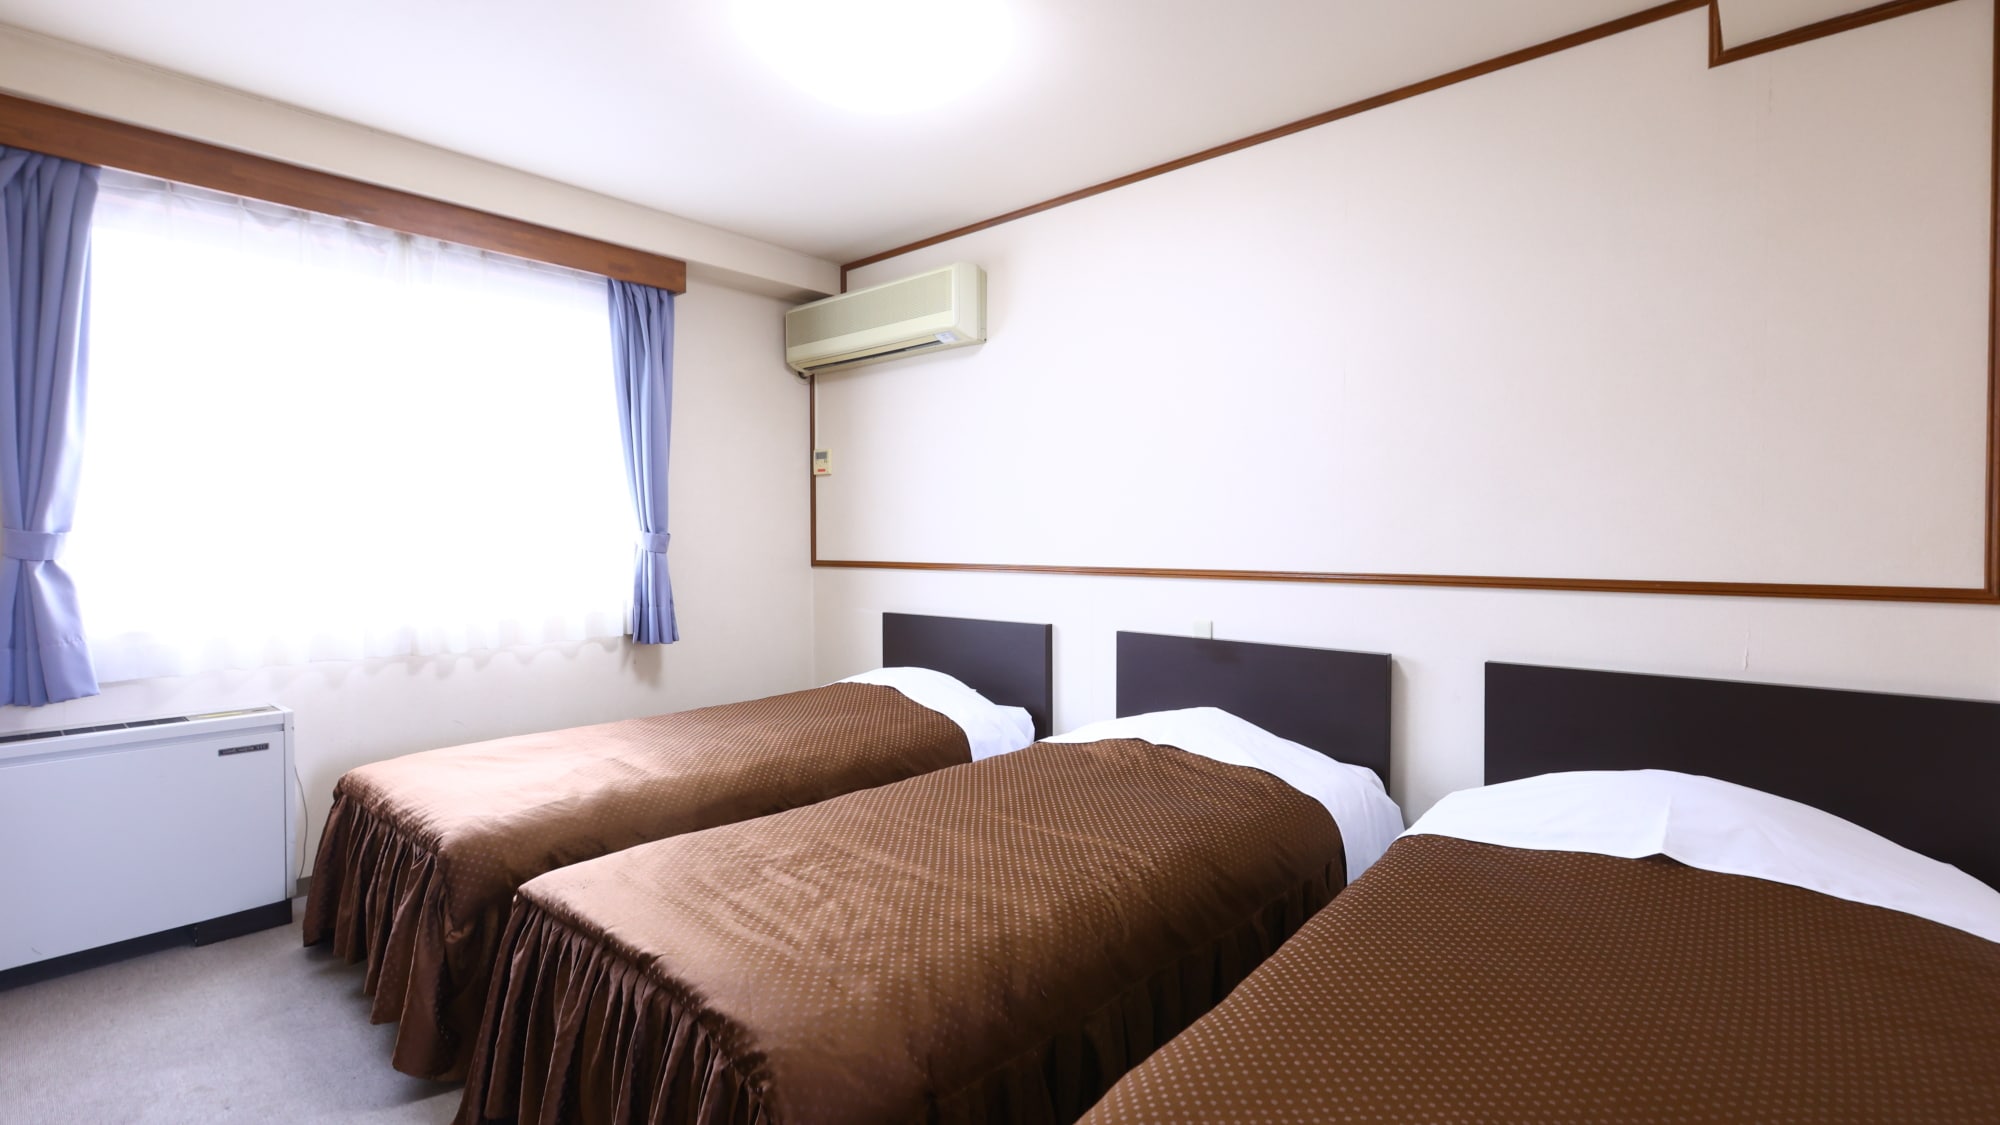 洋室トリプルルーム一例。正規ベッド3台ですのでゆったりお休みになれます。